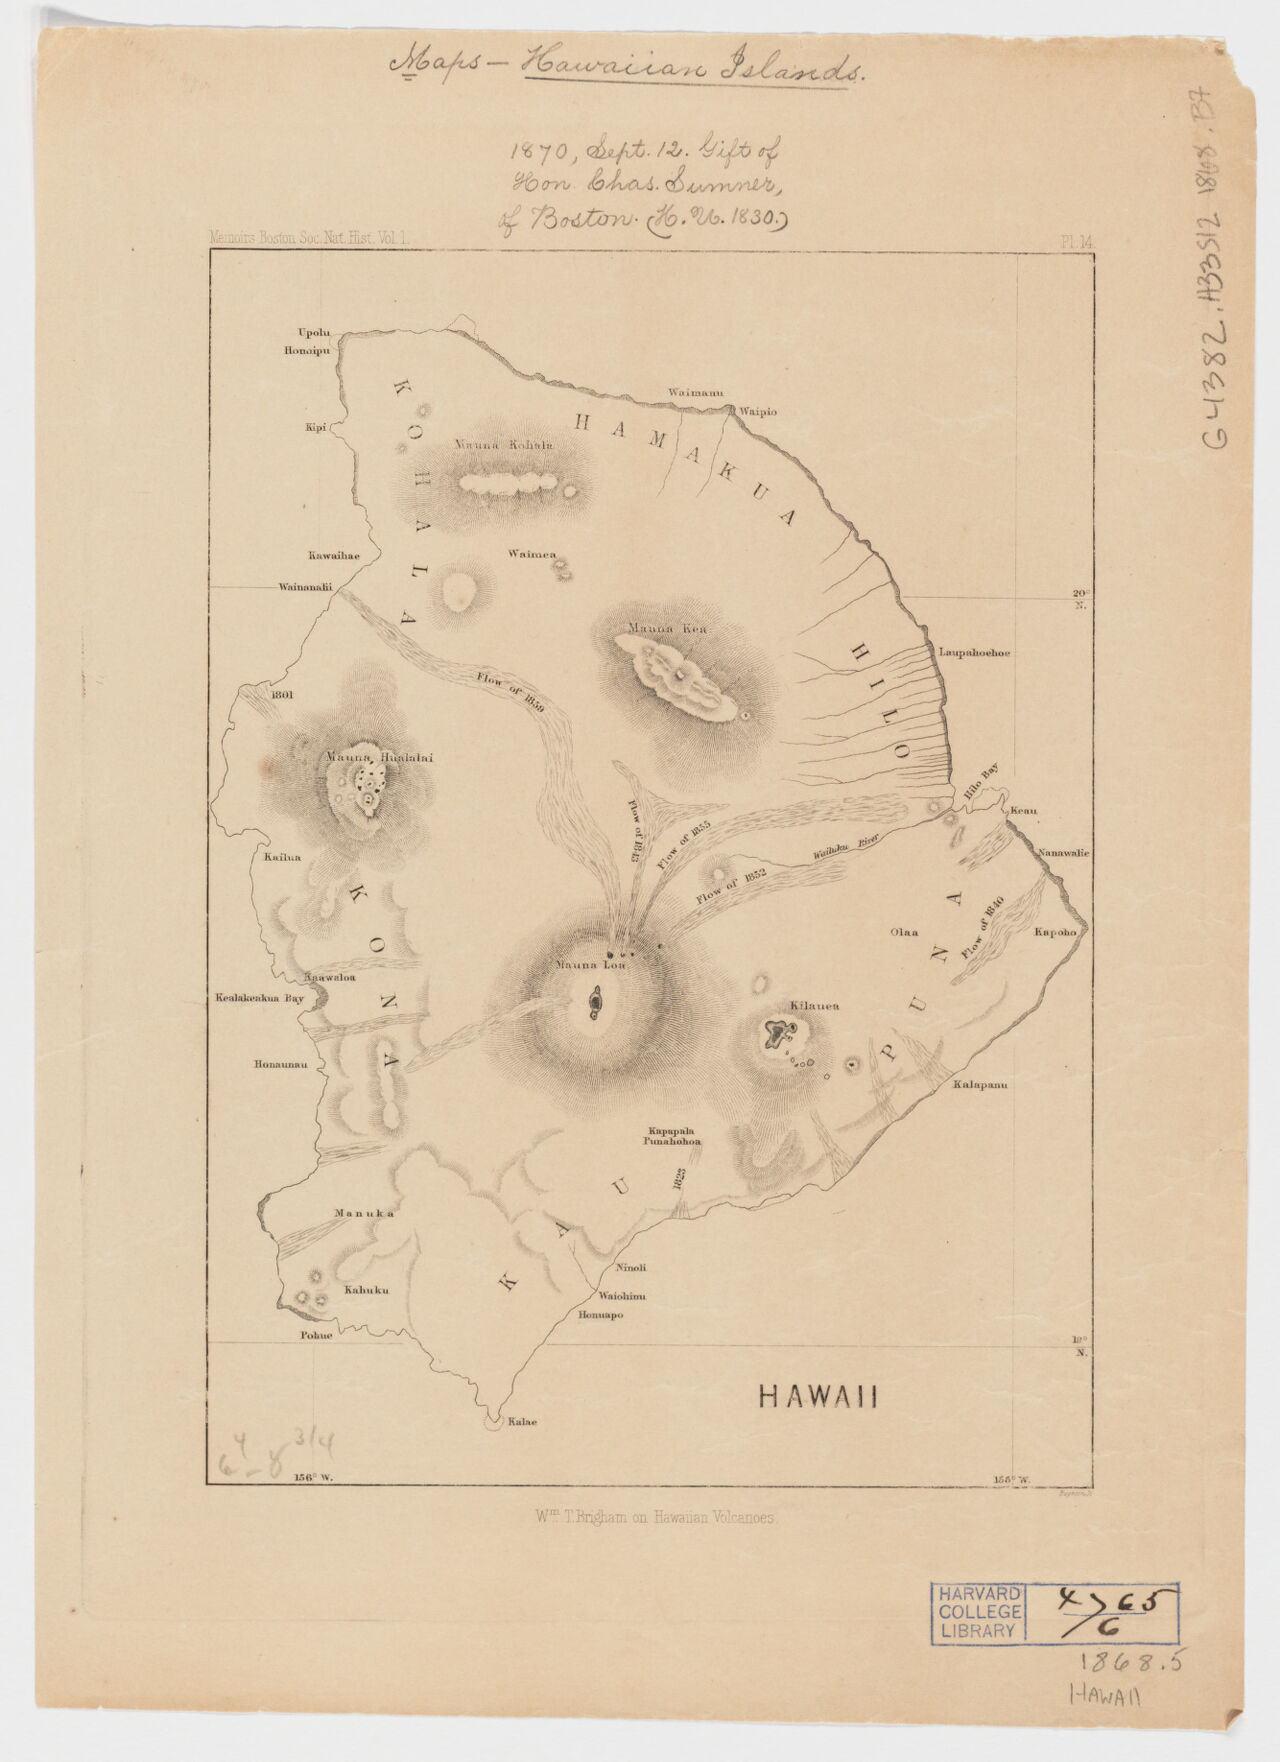 1868 Hawaii, Wm. T. Brigham on Hawaiian volcanoes